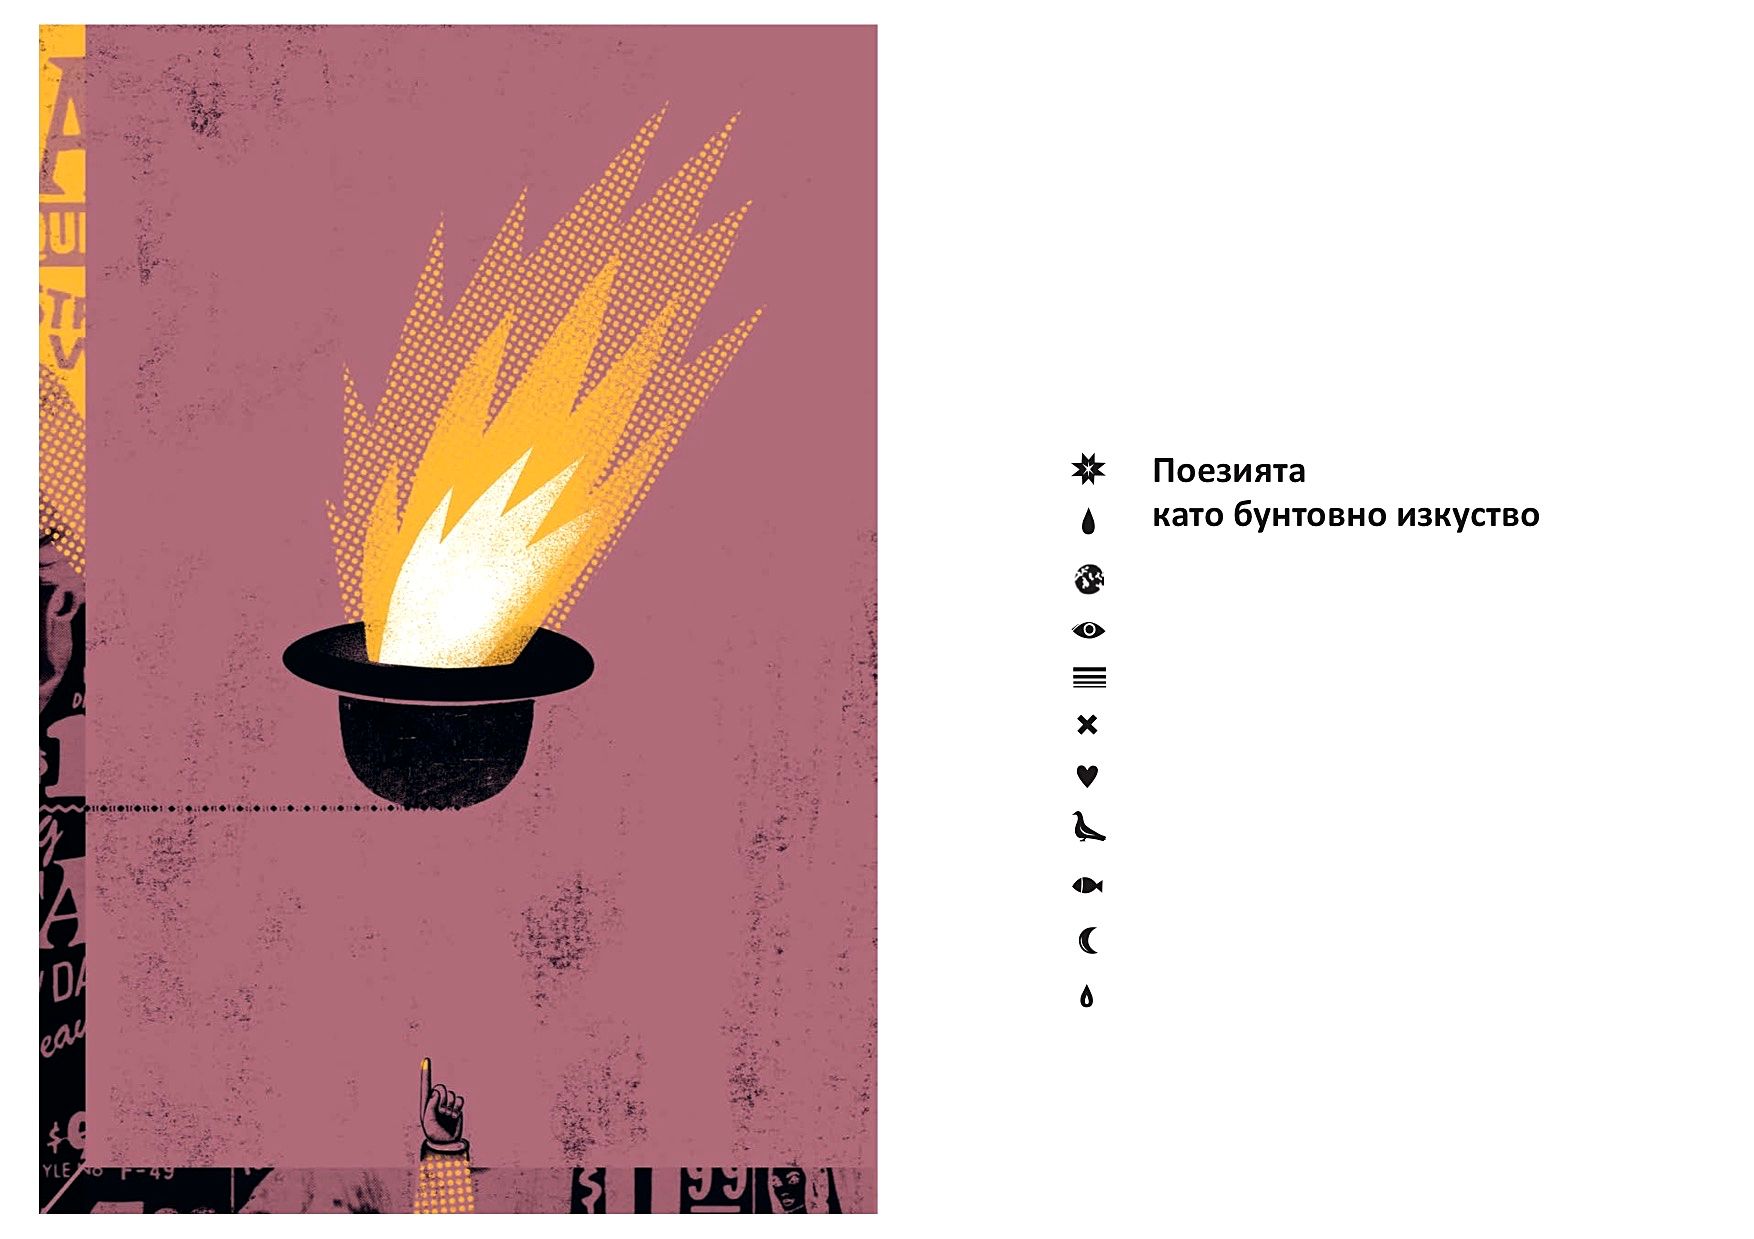 „Поезията като бунтовно изкуство“ на Лорънс Ферлингети